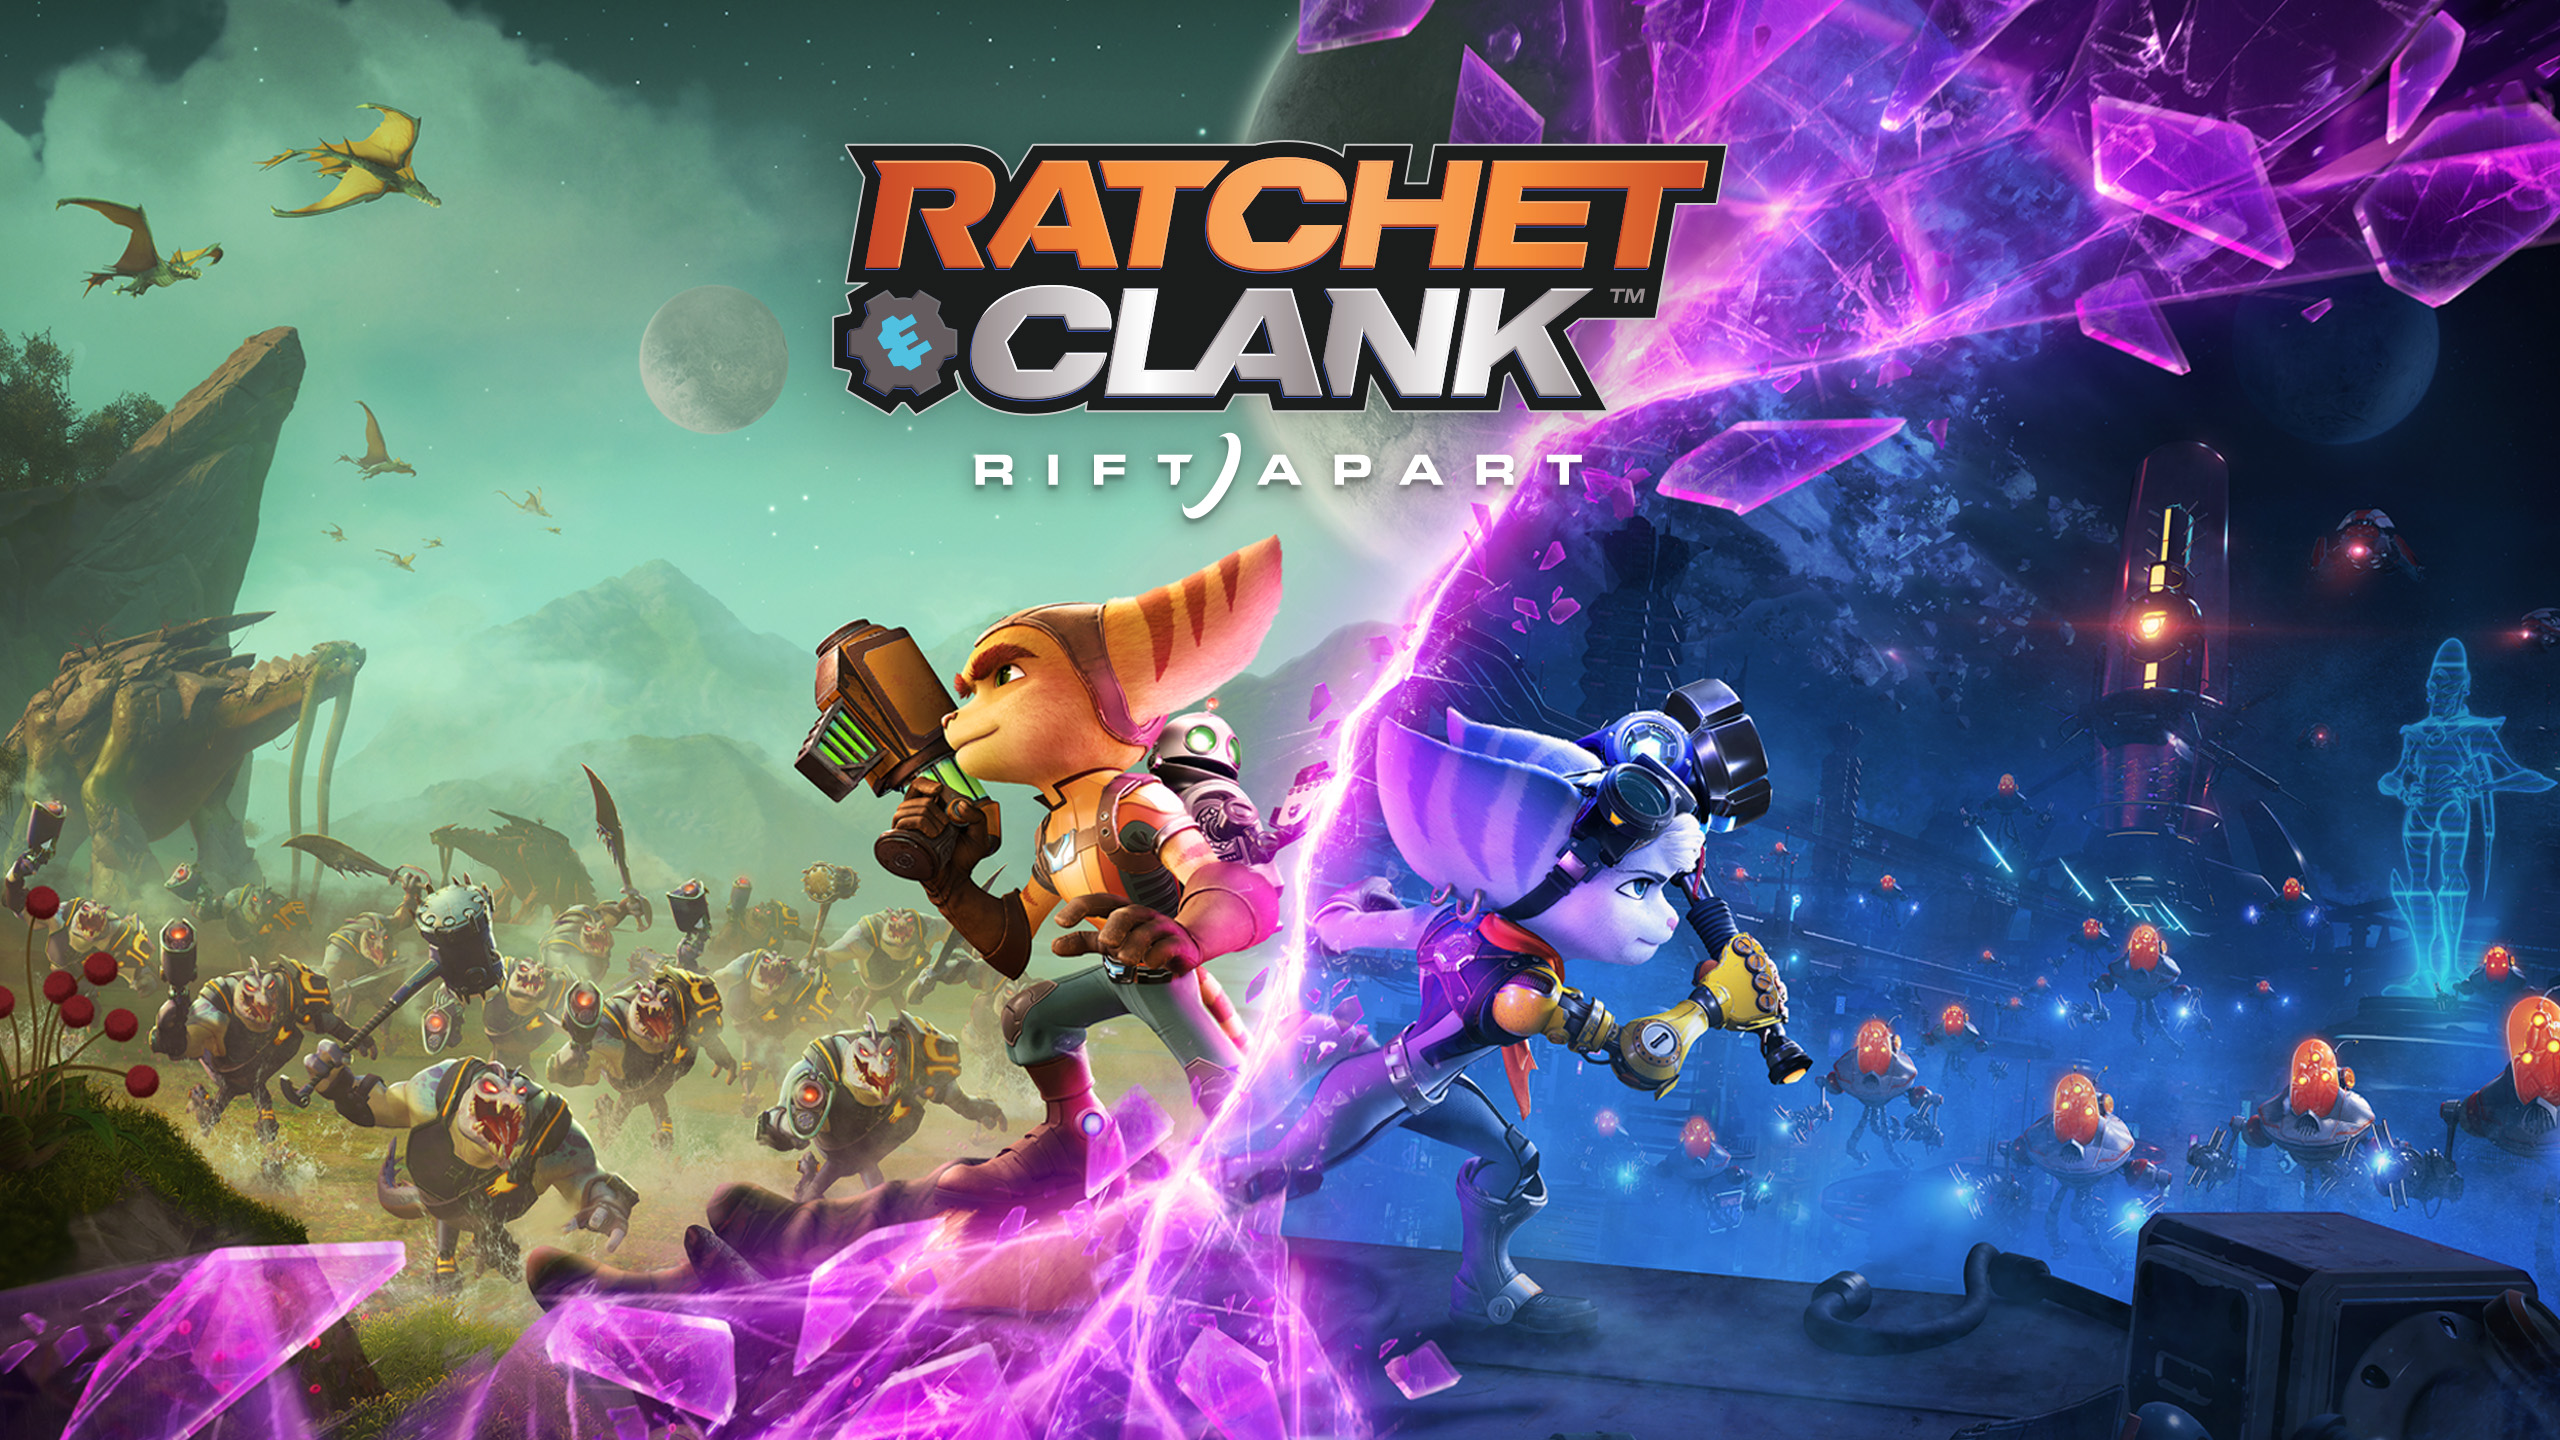 Ratchet & Clank: Rift Apart ИГРОМУЛЬФИЛЬМ ►#11 Финал Прохождение без комментариев (Русская озвучка)